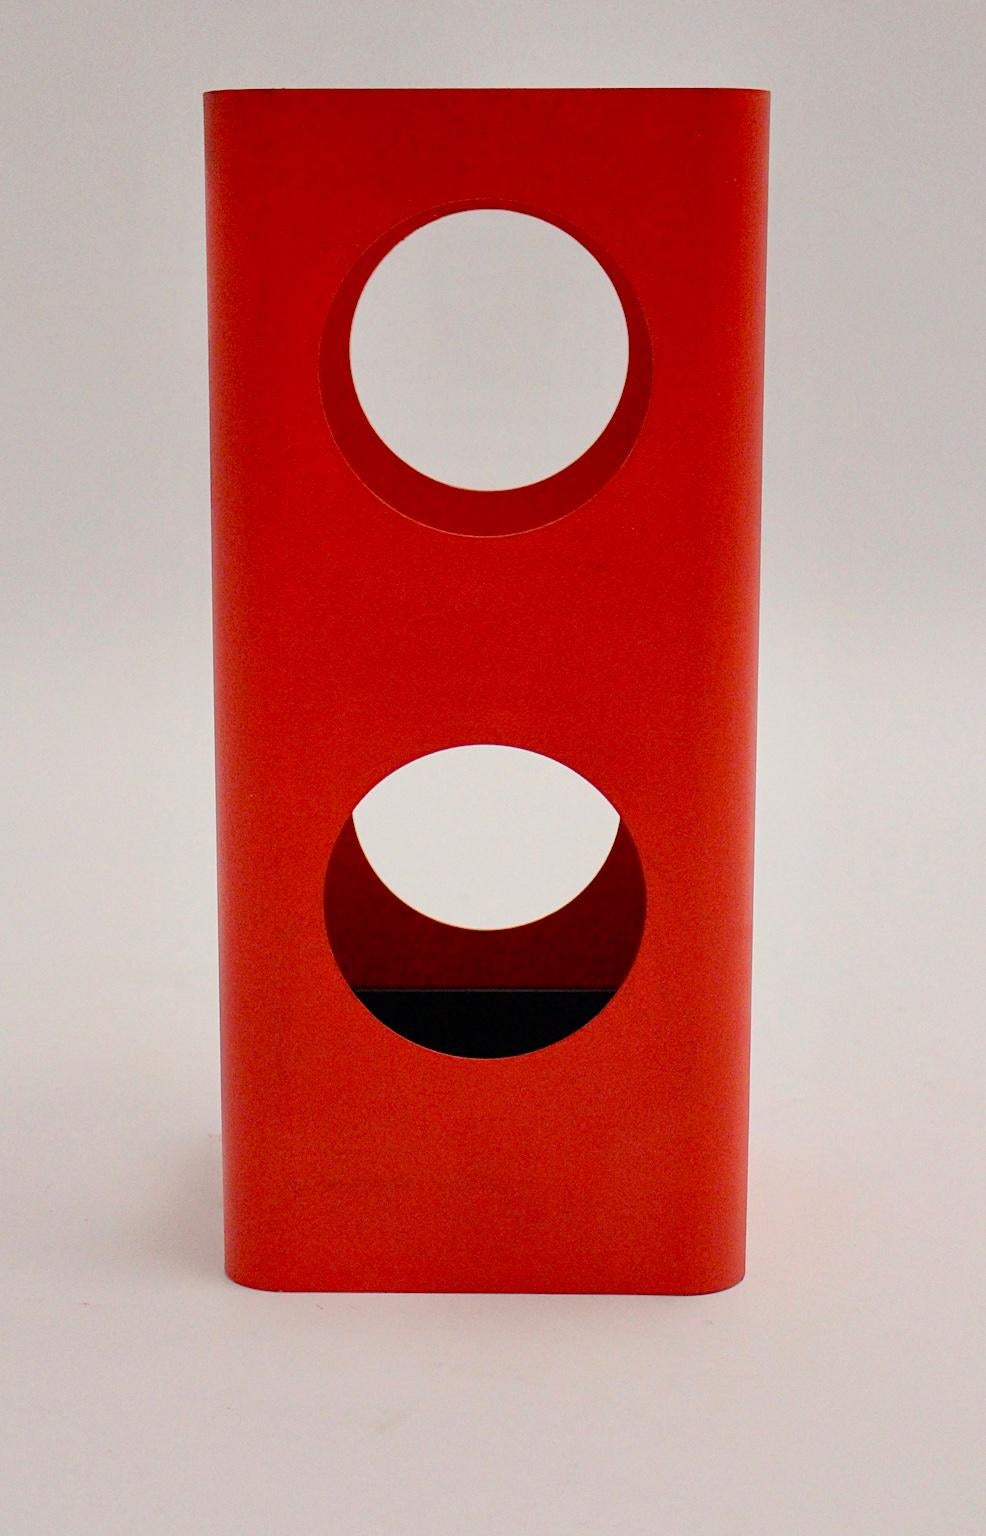 Dieser Weltraumzeitalter-Schirmständer aus rotem Metall wurde um 1970 in Österreich entworfen und hergestellt.
Der Schirmständer hat runde Löcher als Dekoration und ist neu rot lackiert.
Außerdem hat der rote Schirmständer eine lose schwarze